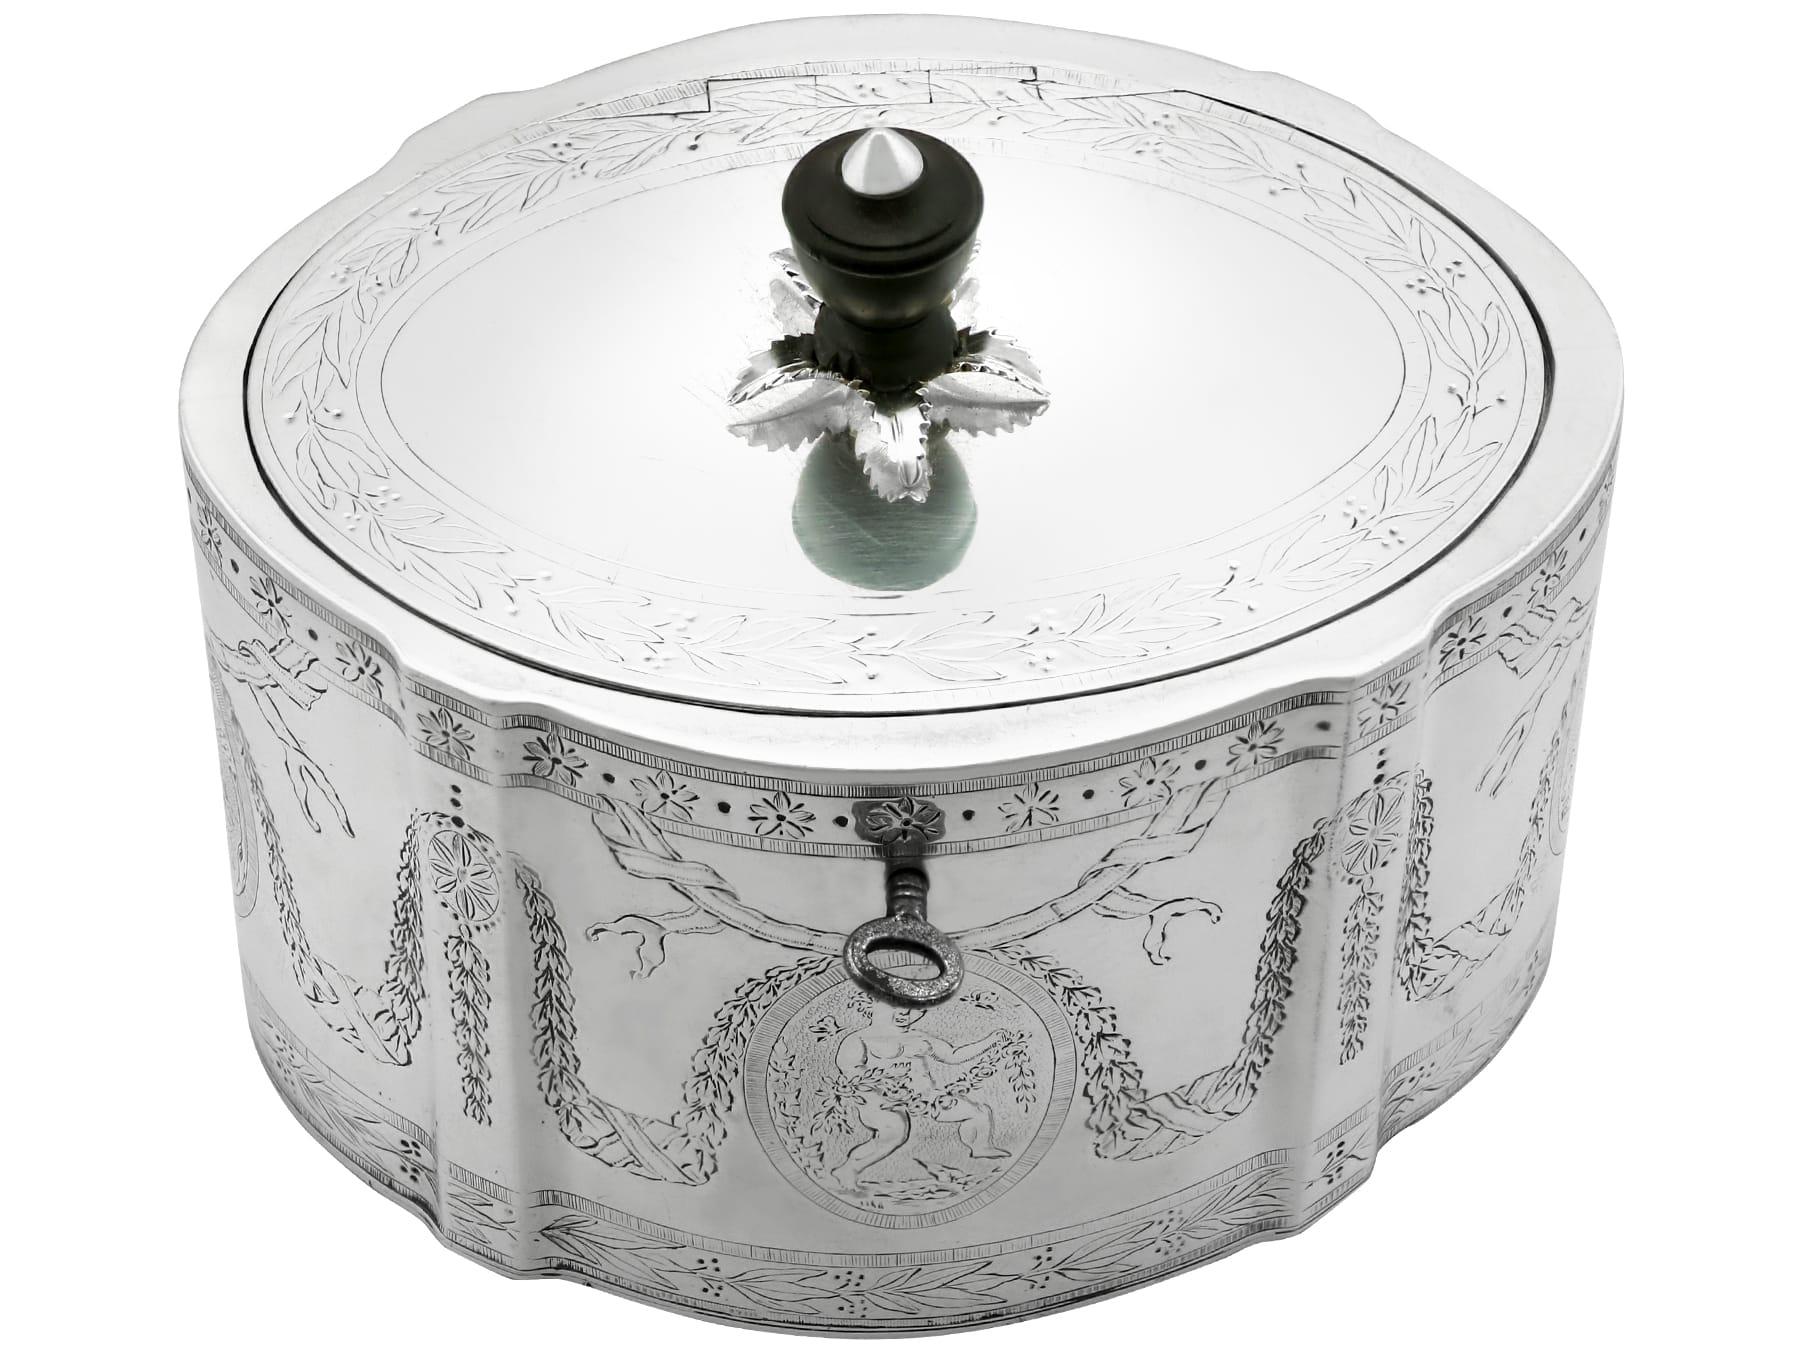 Eine außergewöhnliche, feine und beeindruckende antike georgianische englische Teedose aus Sterlingsilber mit Verschluss; eine Ergänzung zu unserer Silberteegeschirr-Sammlung.

Diese außergewöhnliche antike Teedose aus Georg III. Sterlingsilber hat